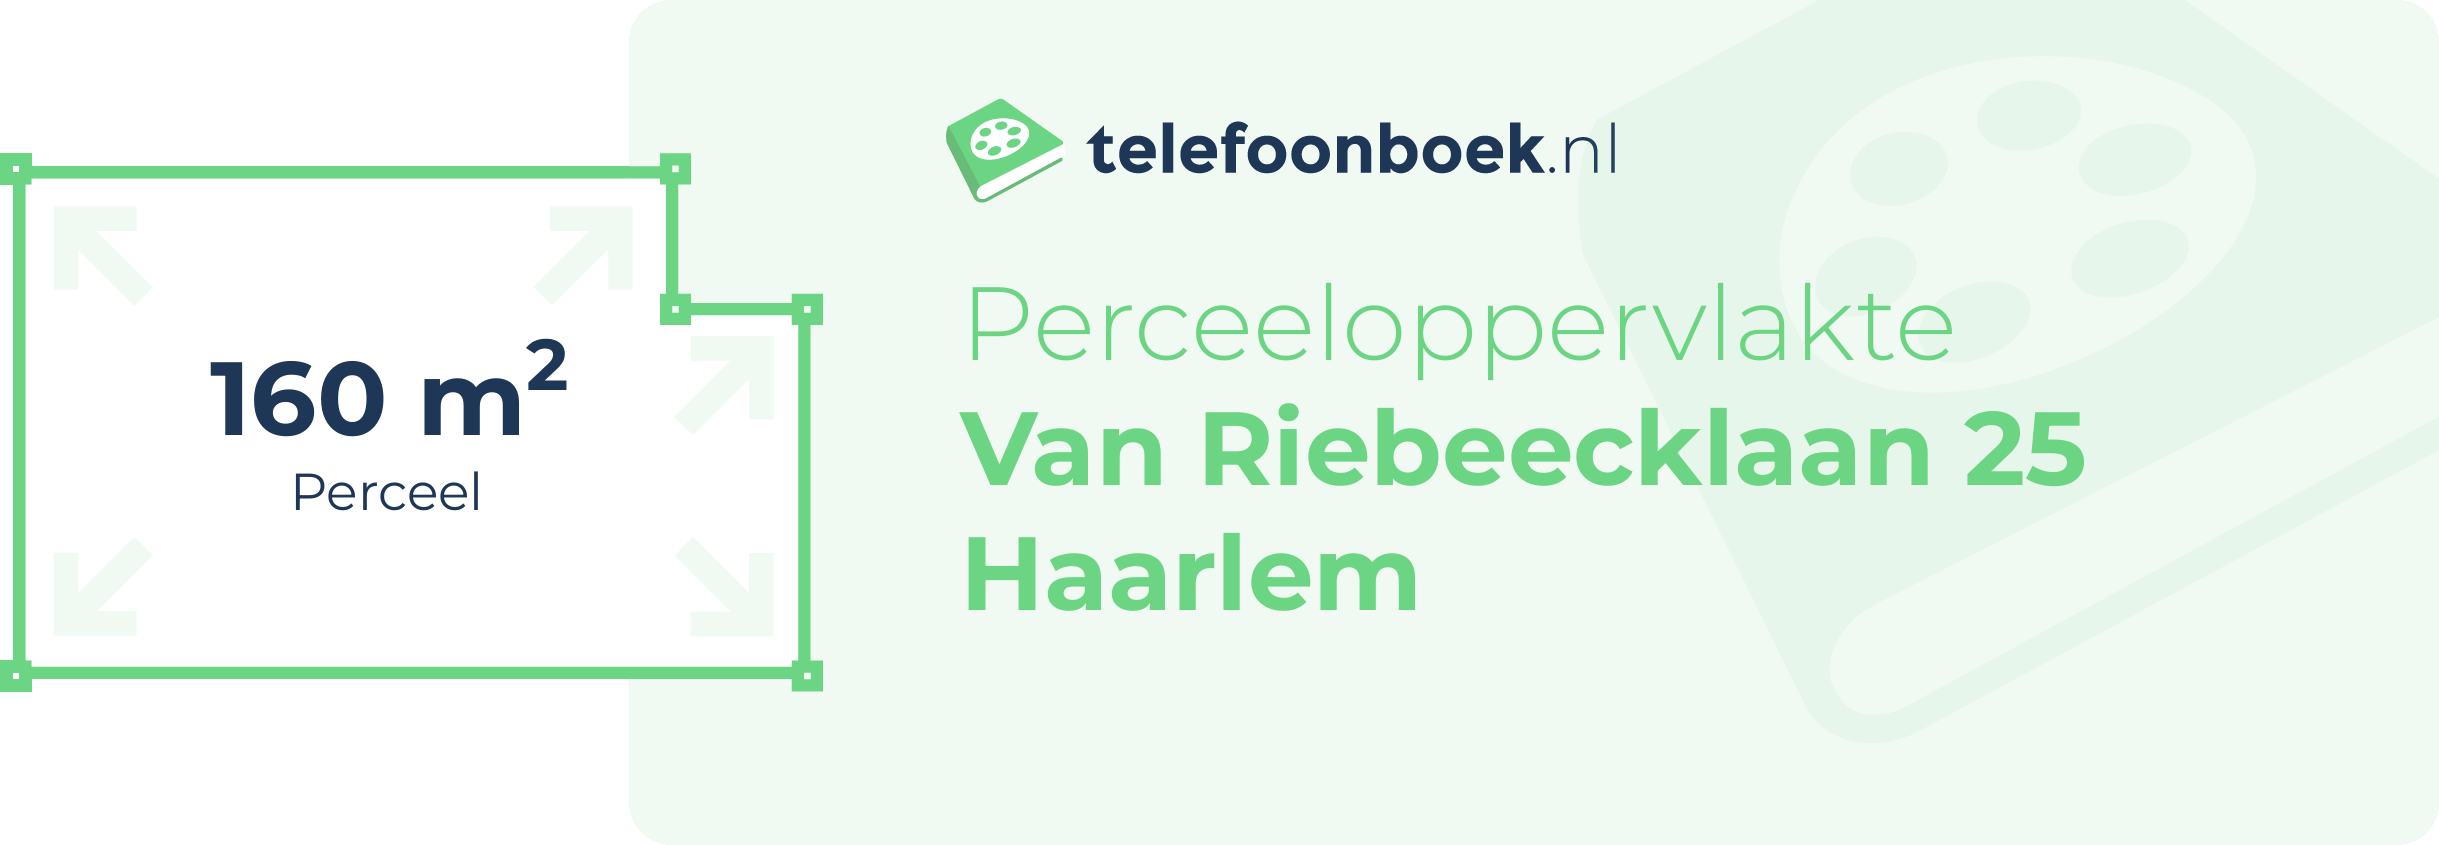 Perceeloppervlakte Van Riebeecklaan 25 Haarlem